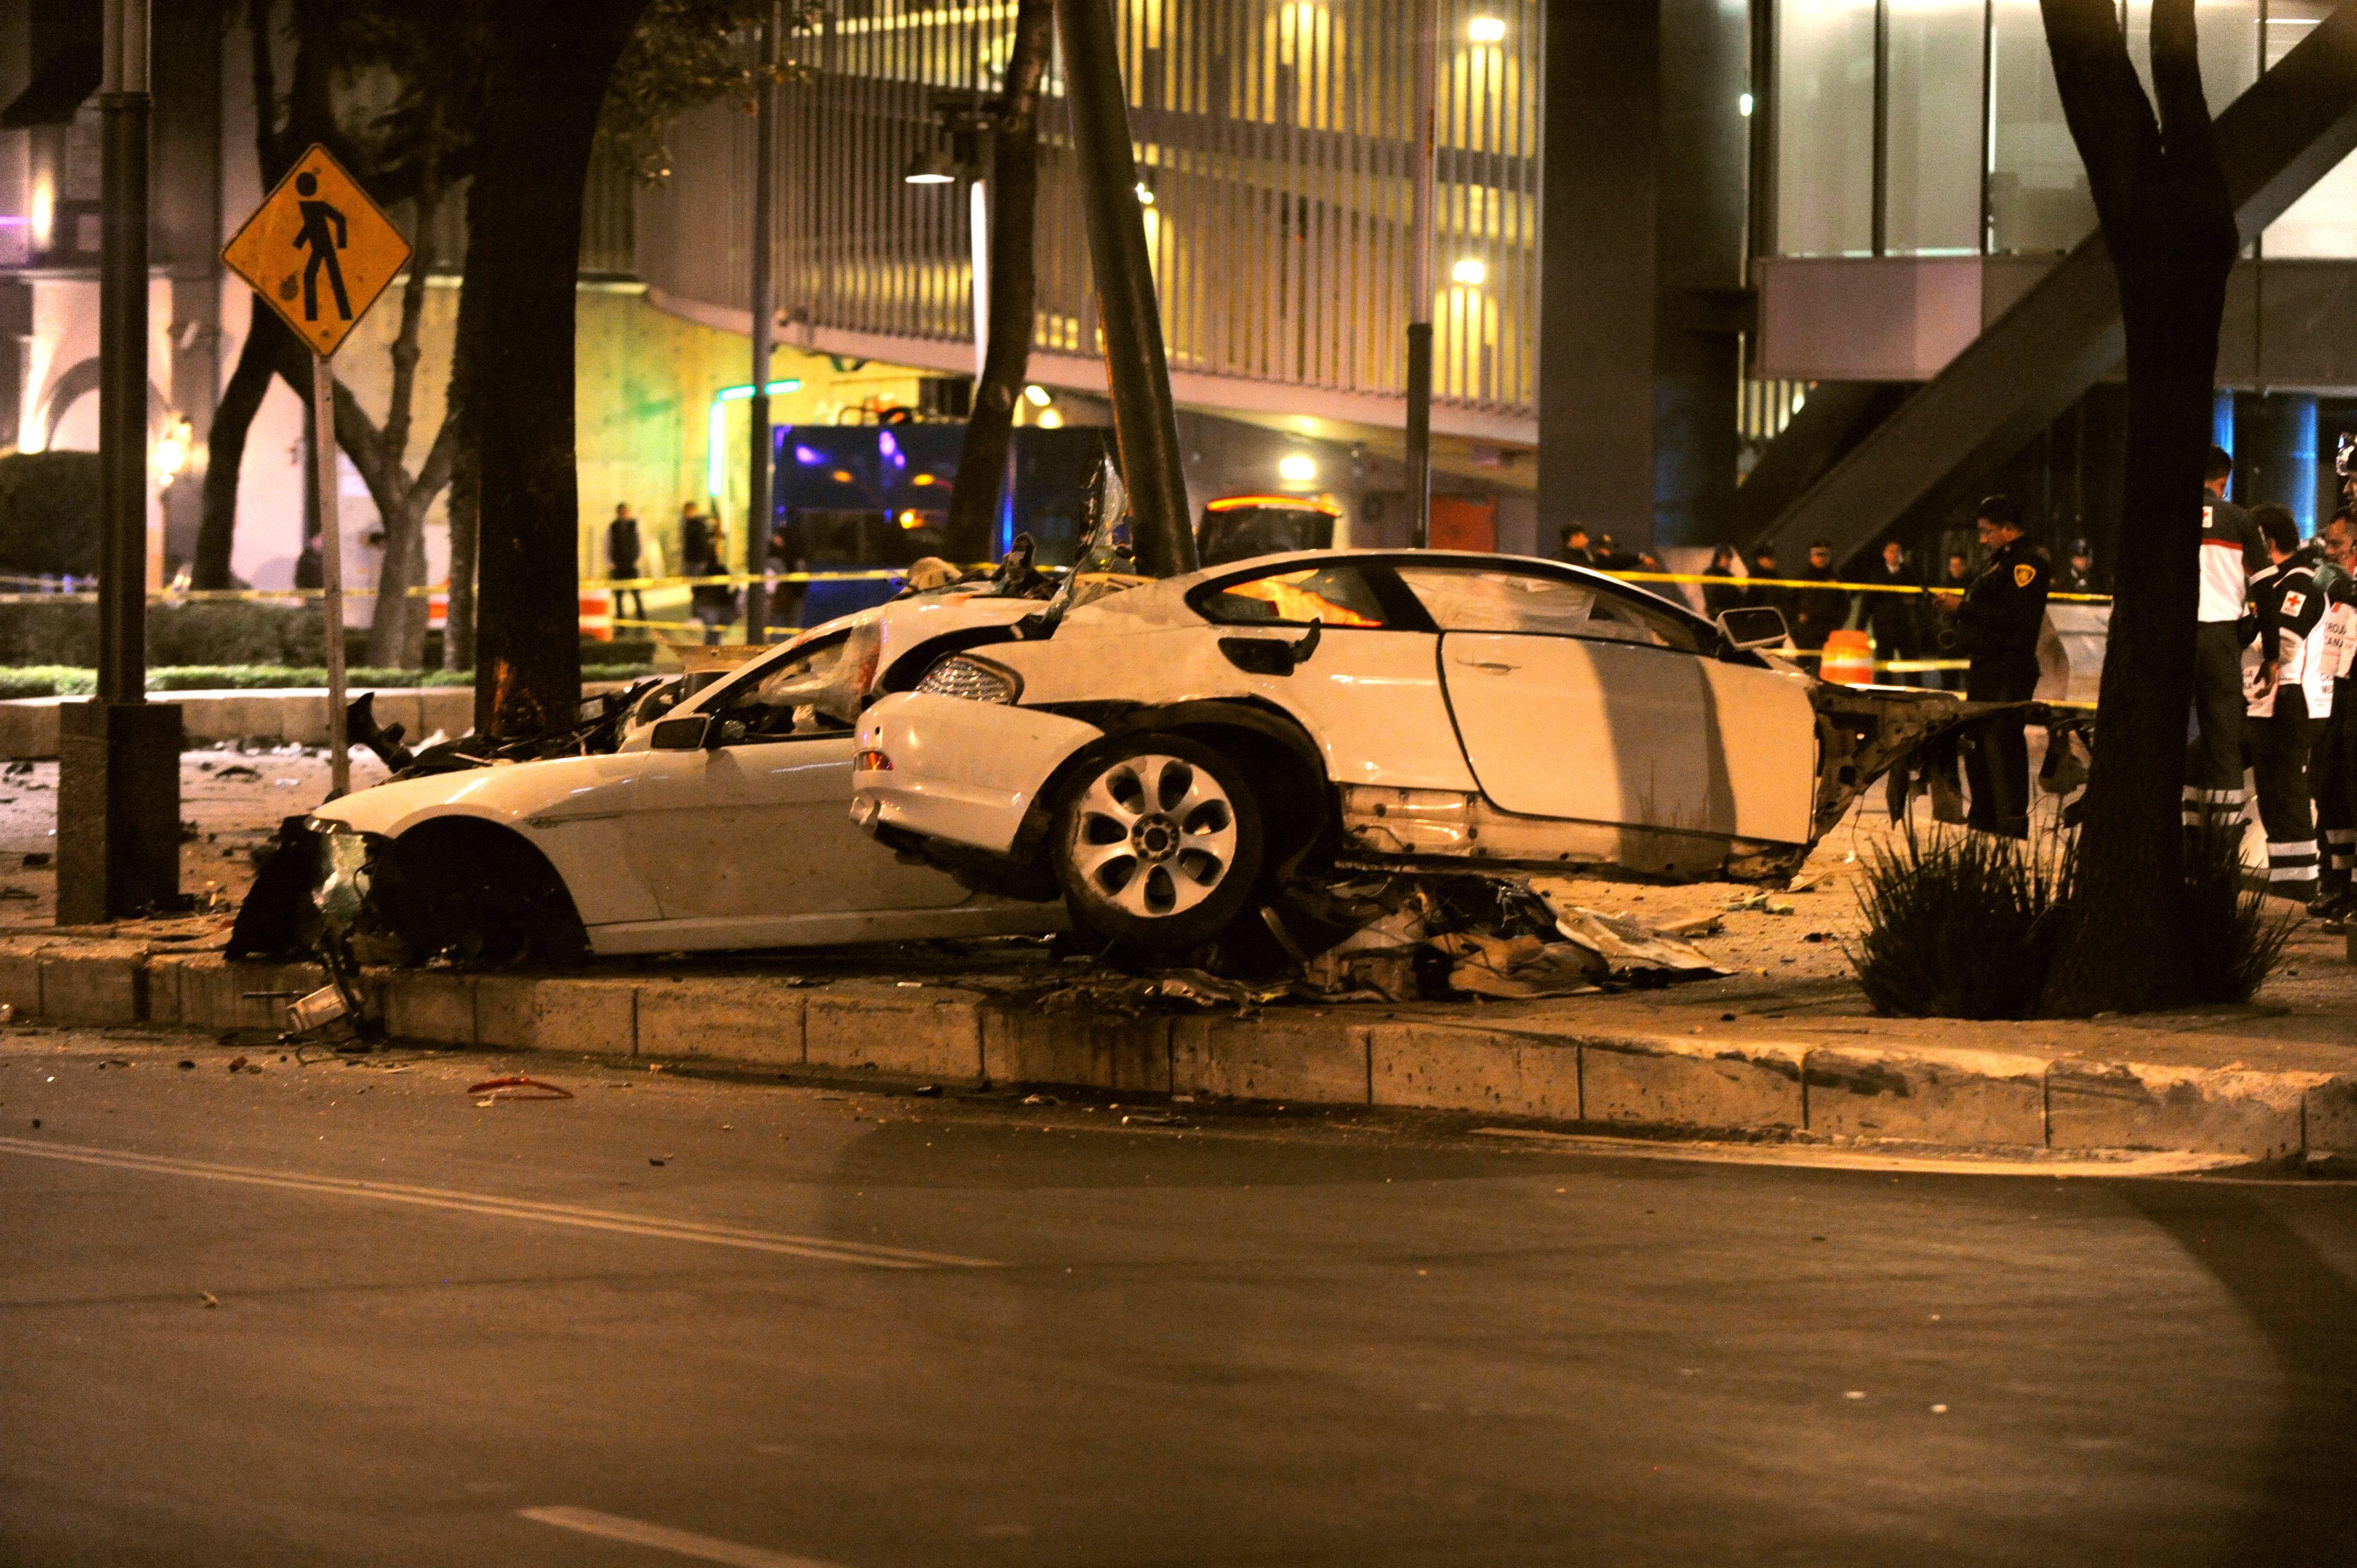  Arranca juicio para conductor responsable de accidente fatal en Paseo de la Reforma